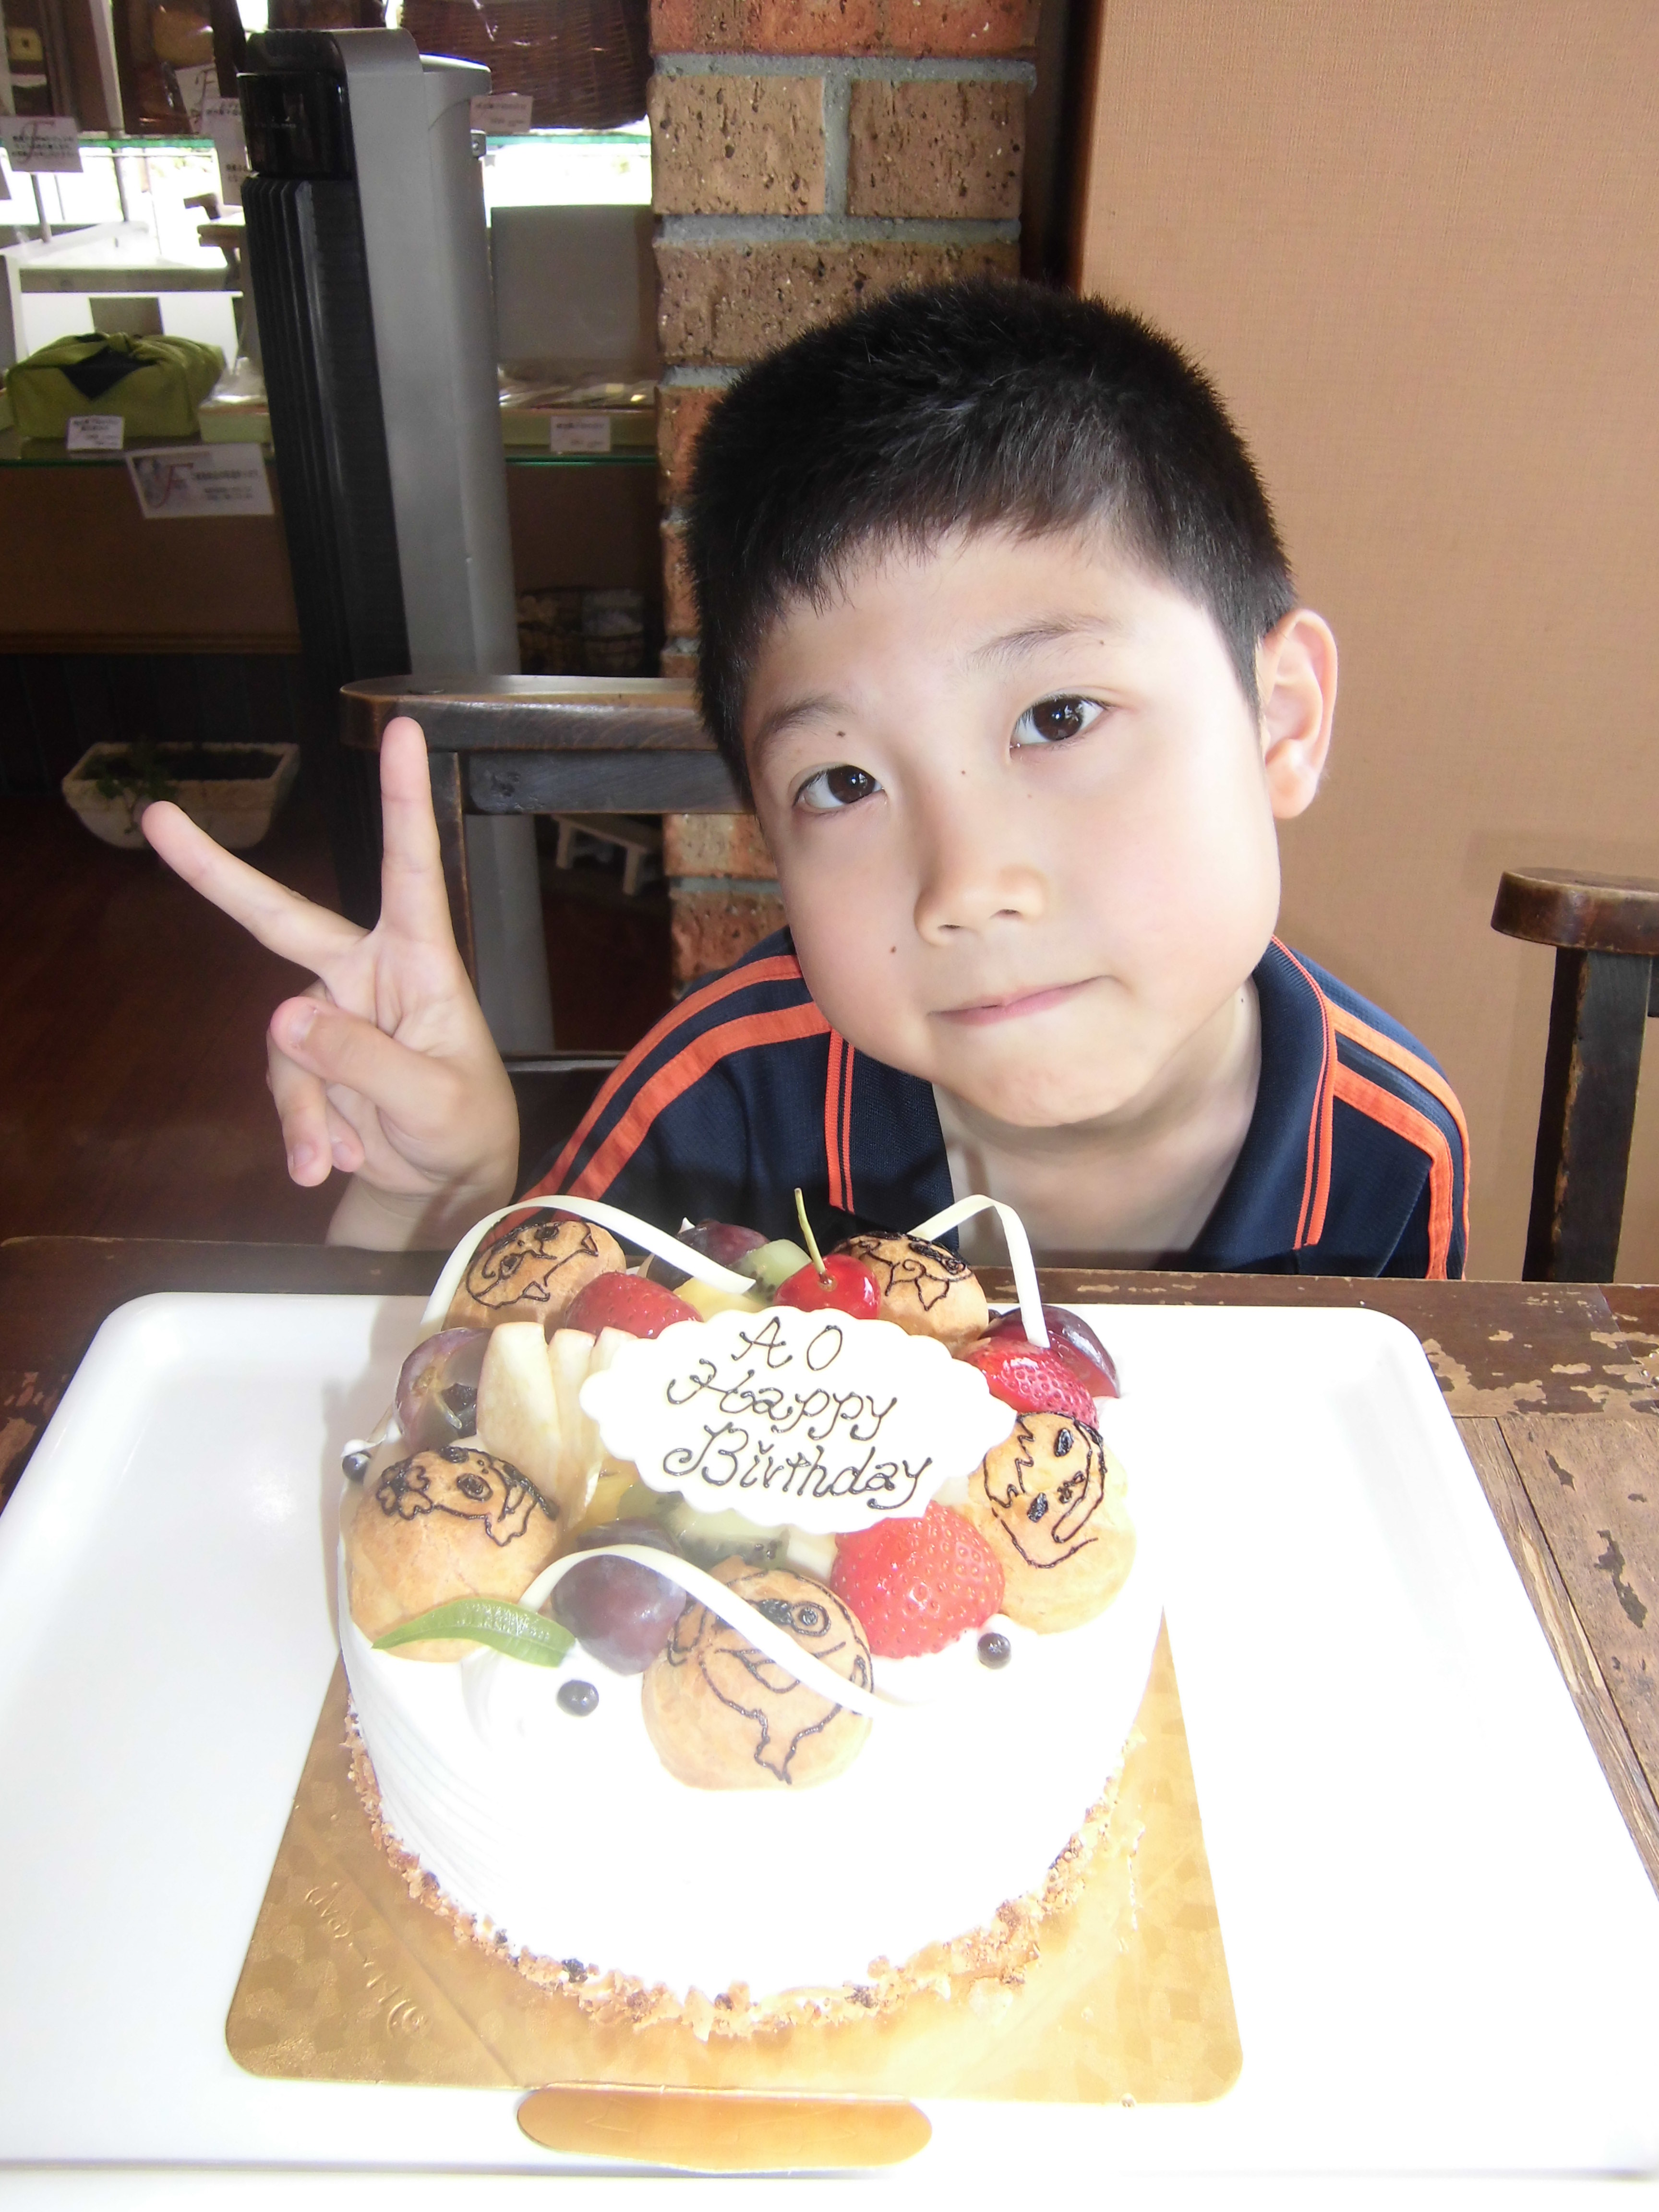 お誕生日おめでとうございます オリジナルケーキ 生菓子の販売 焼き菓子の通販 誕生日ケーキの事は大阪府堺市のパティスリーフォンセへ